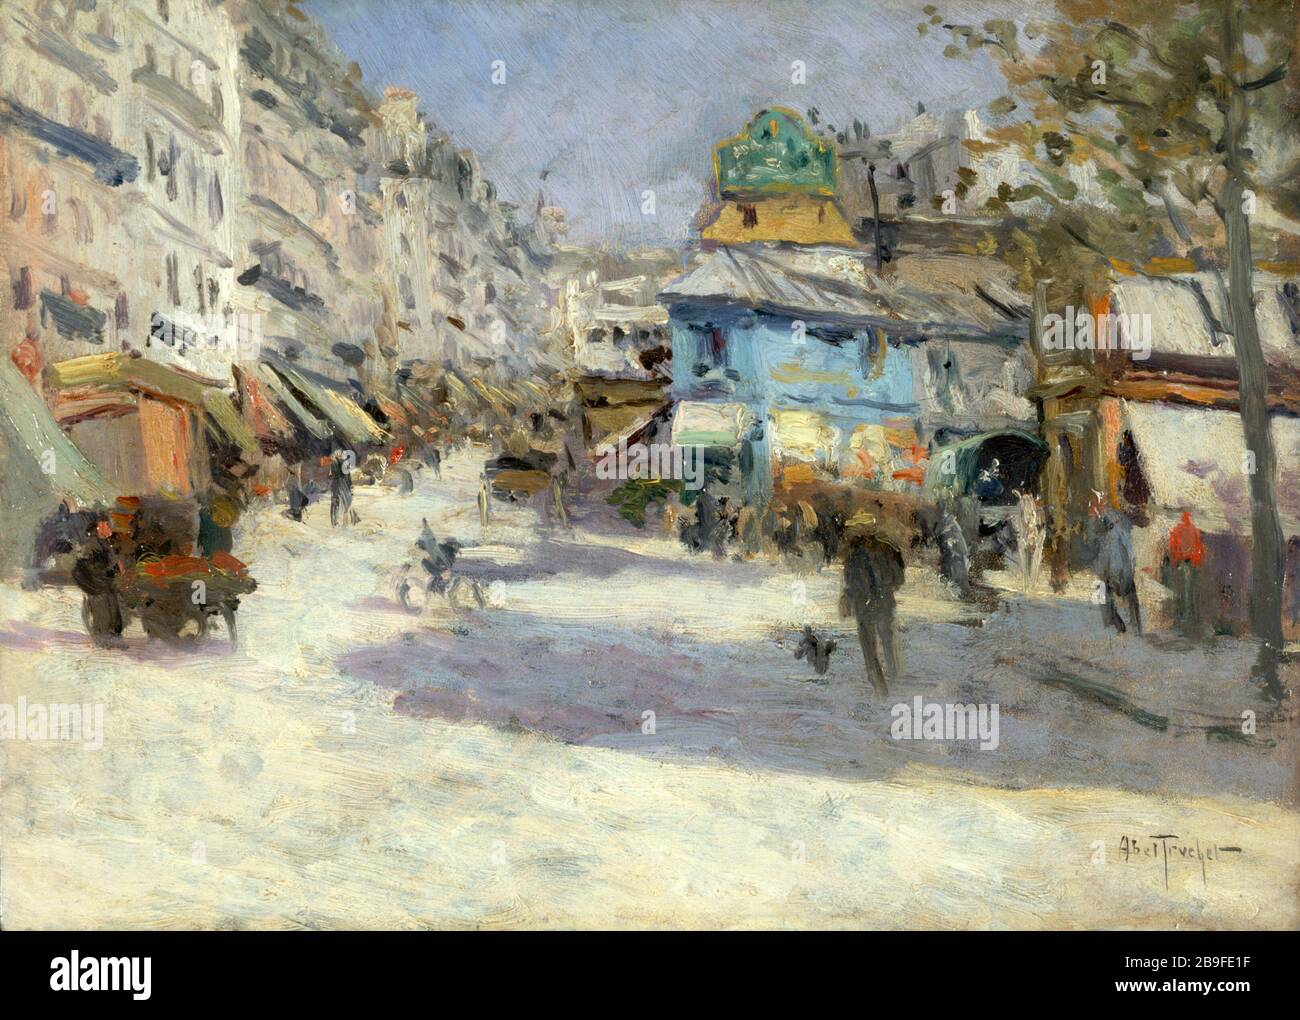 LEPIC THE STREET AND PLACE White Louis-Abel Truchet (1857-1918). 'La rue Lepic et la place Blanche'. Huile sur bois. Paris, musée Carnavalet. Stock Photo